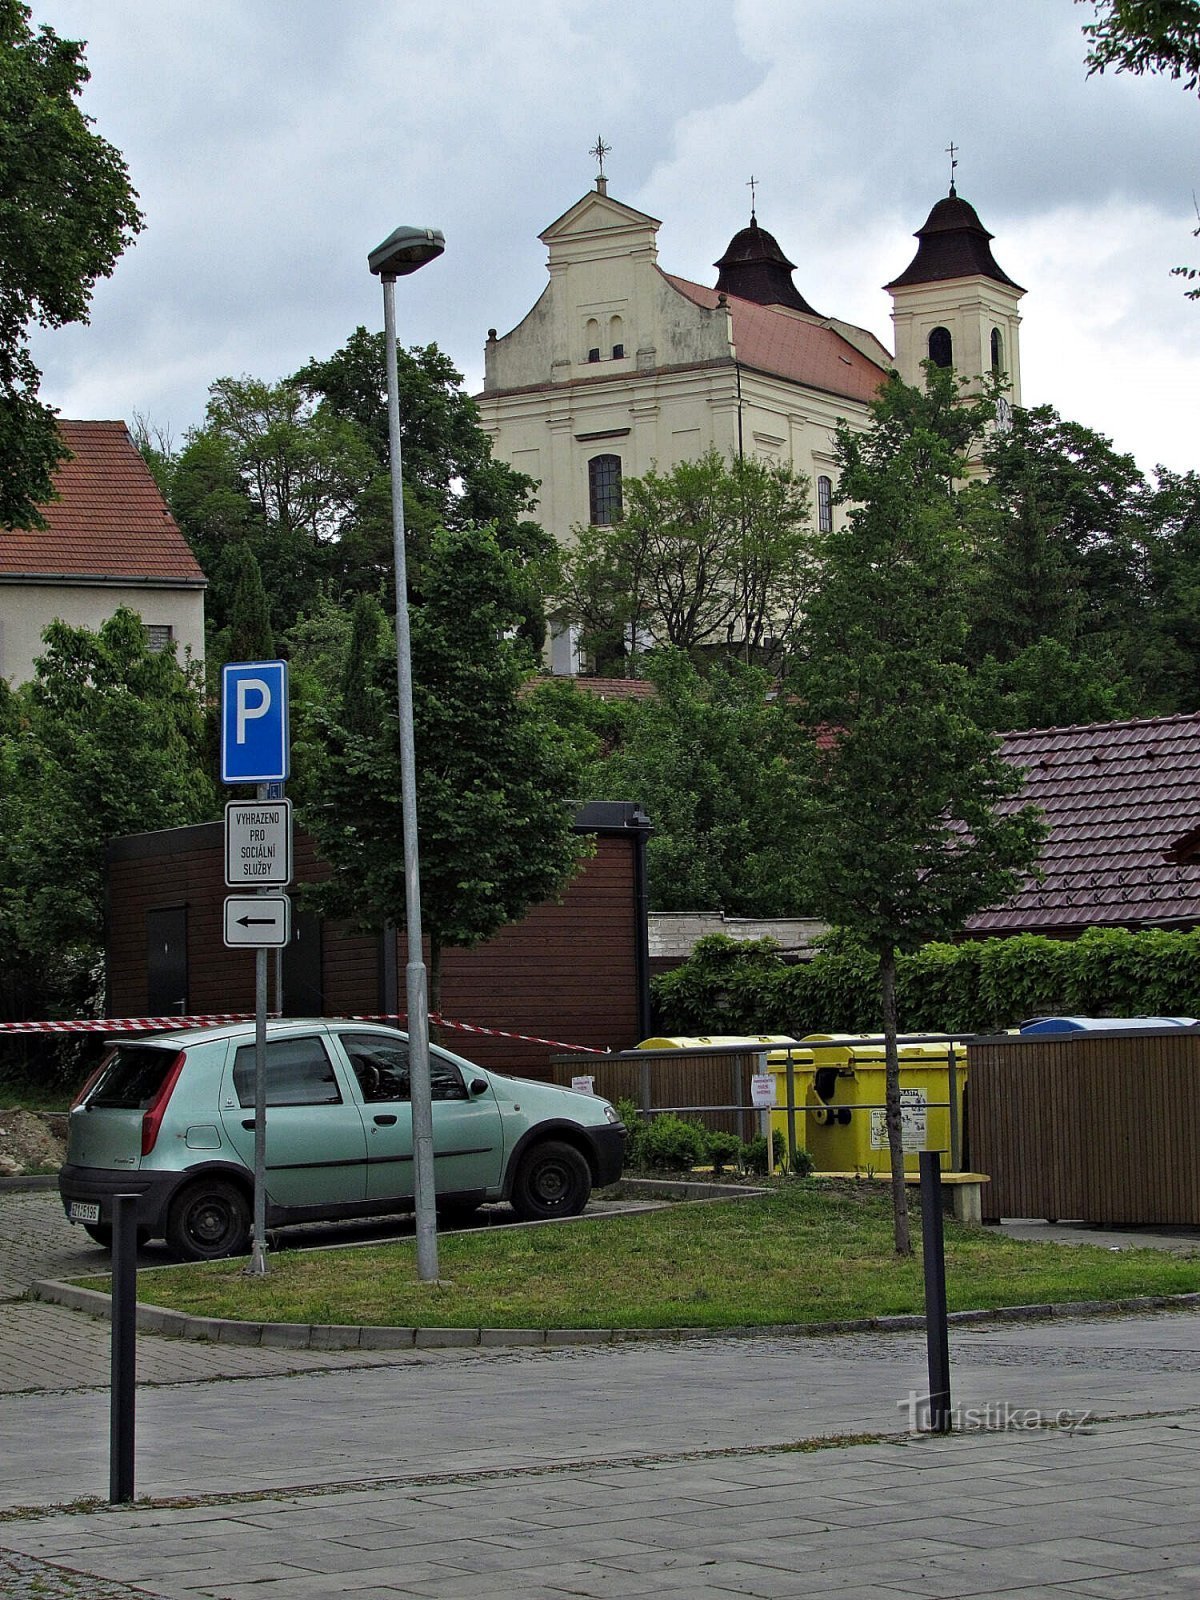 Church of St. Lawrence in Bojkovice